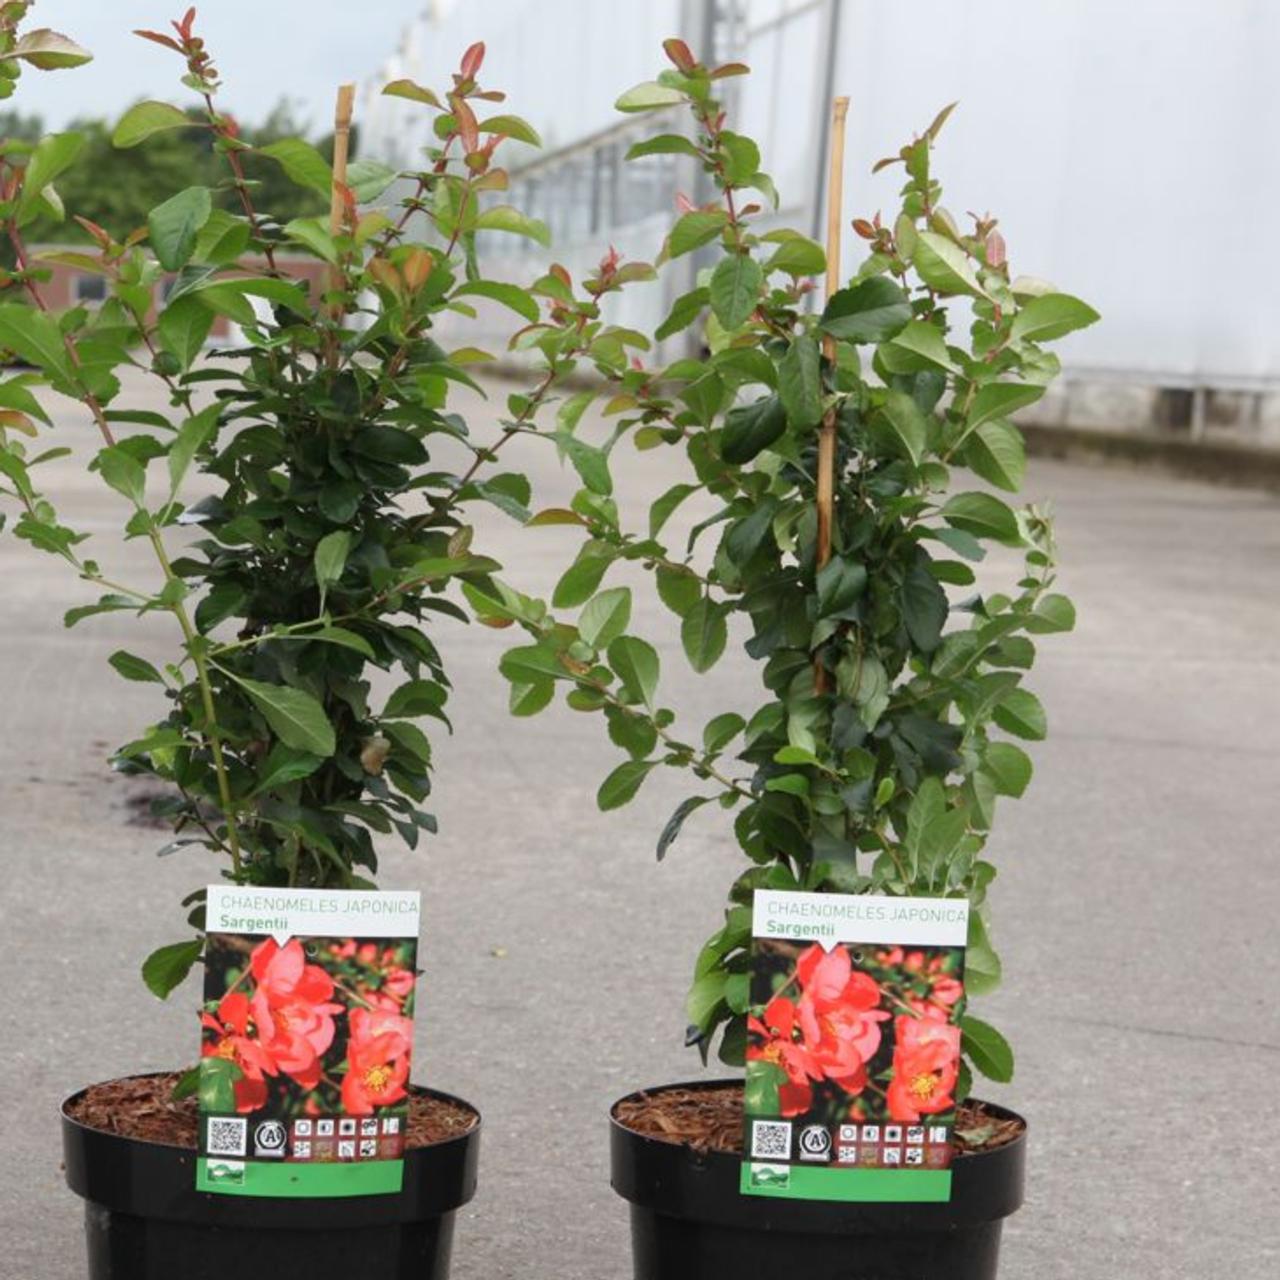 Chaenomeles japonica 'Sargentii'   Kaufen Sie Pflanzen bei Coolplants